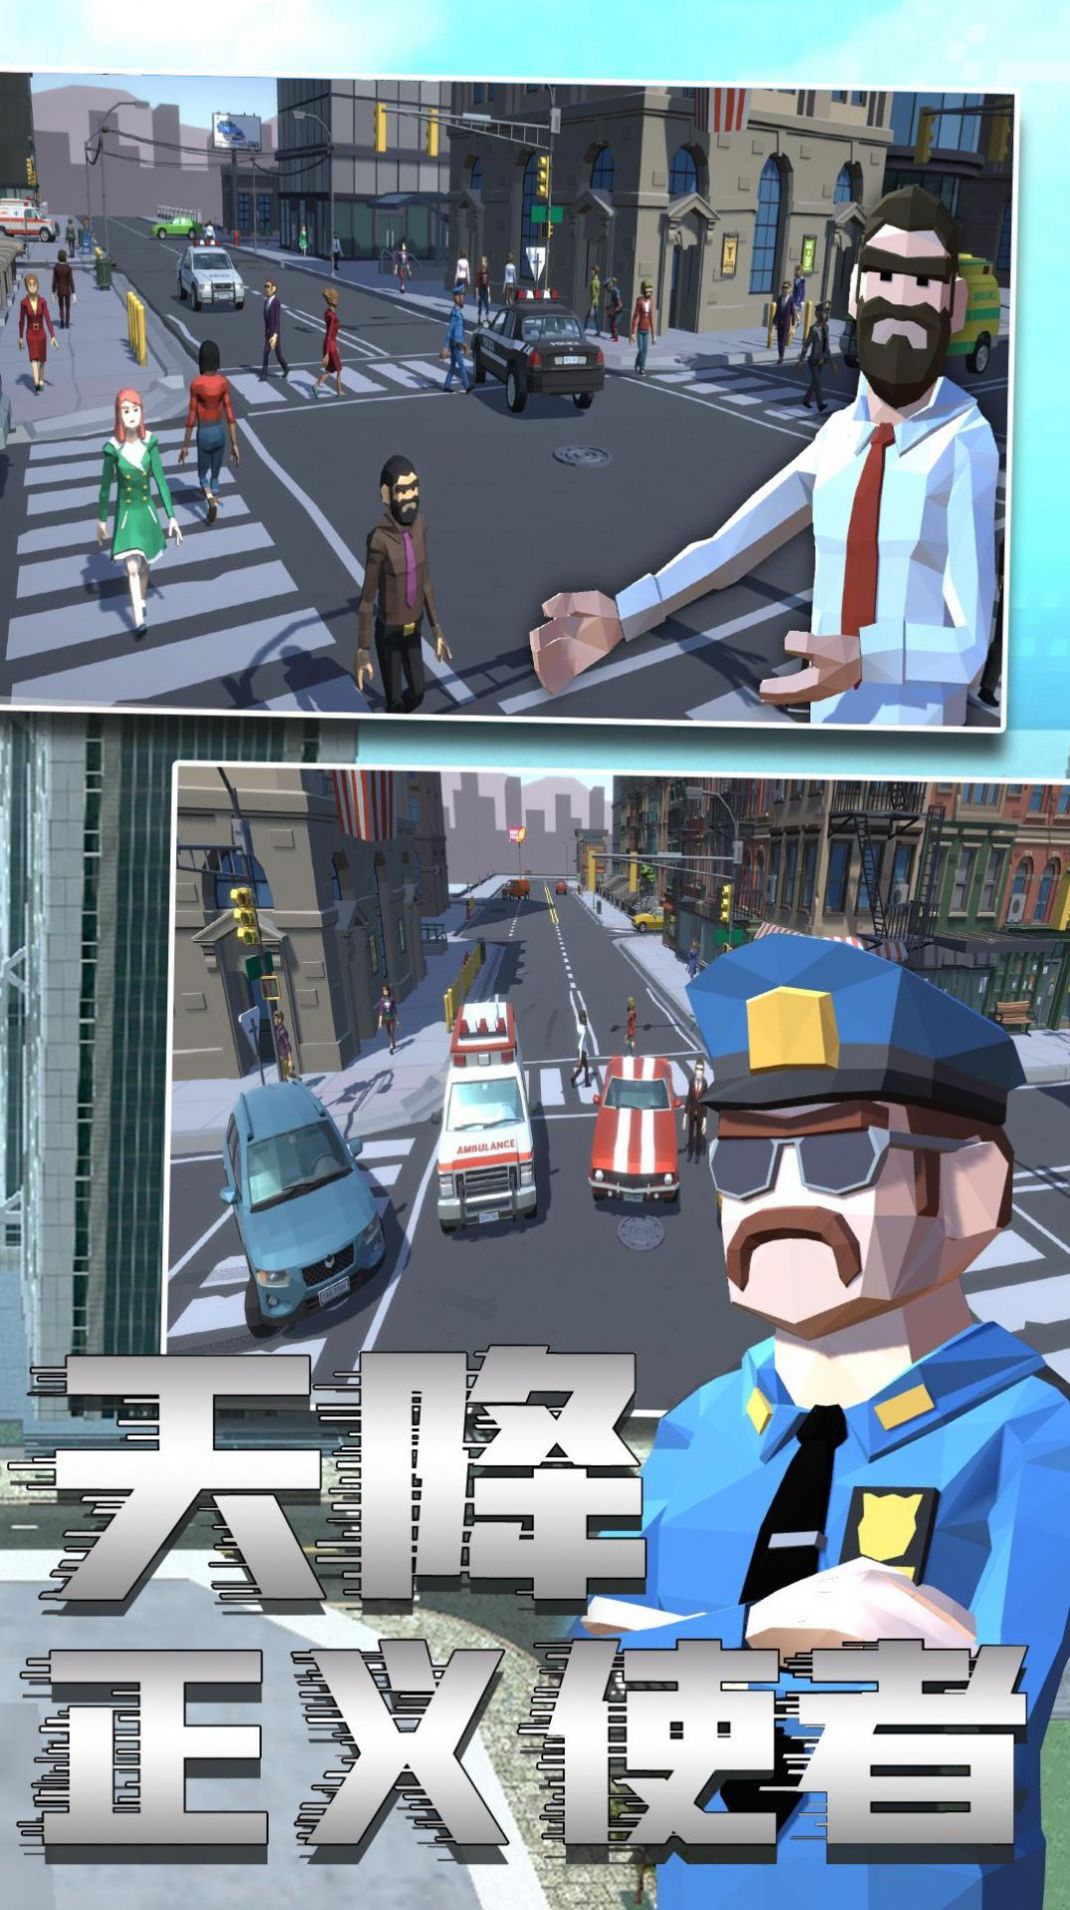 警察模拟6游戏